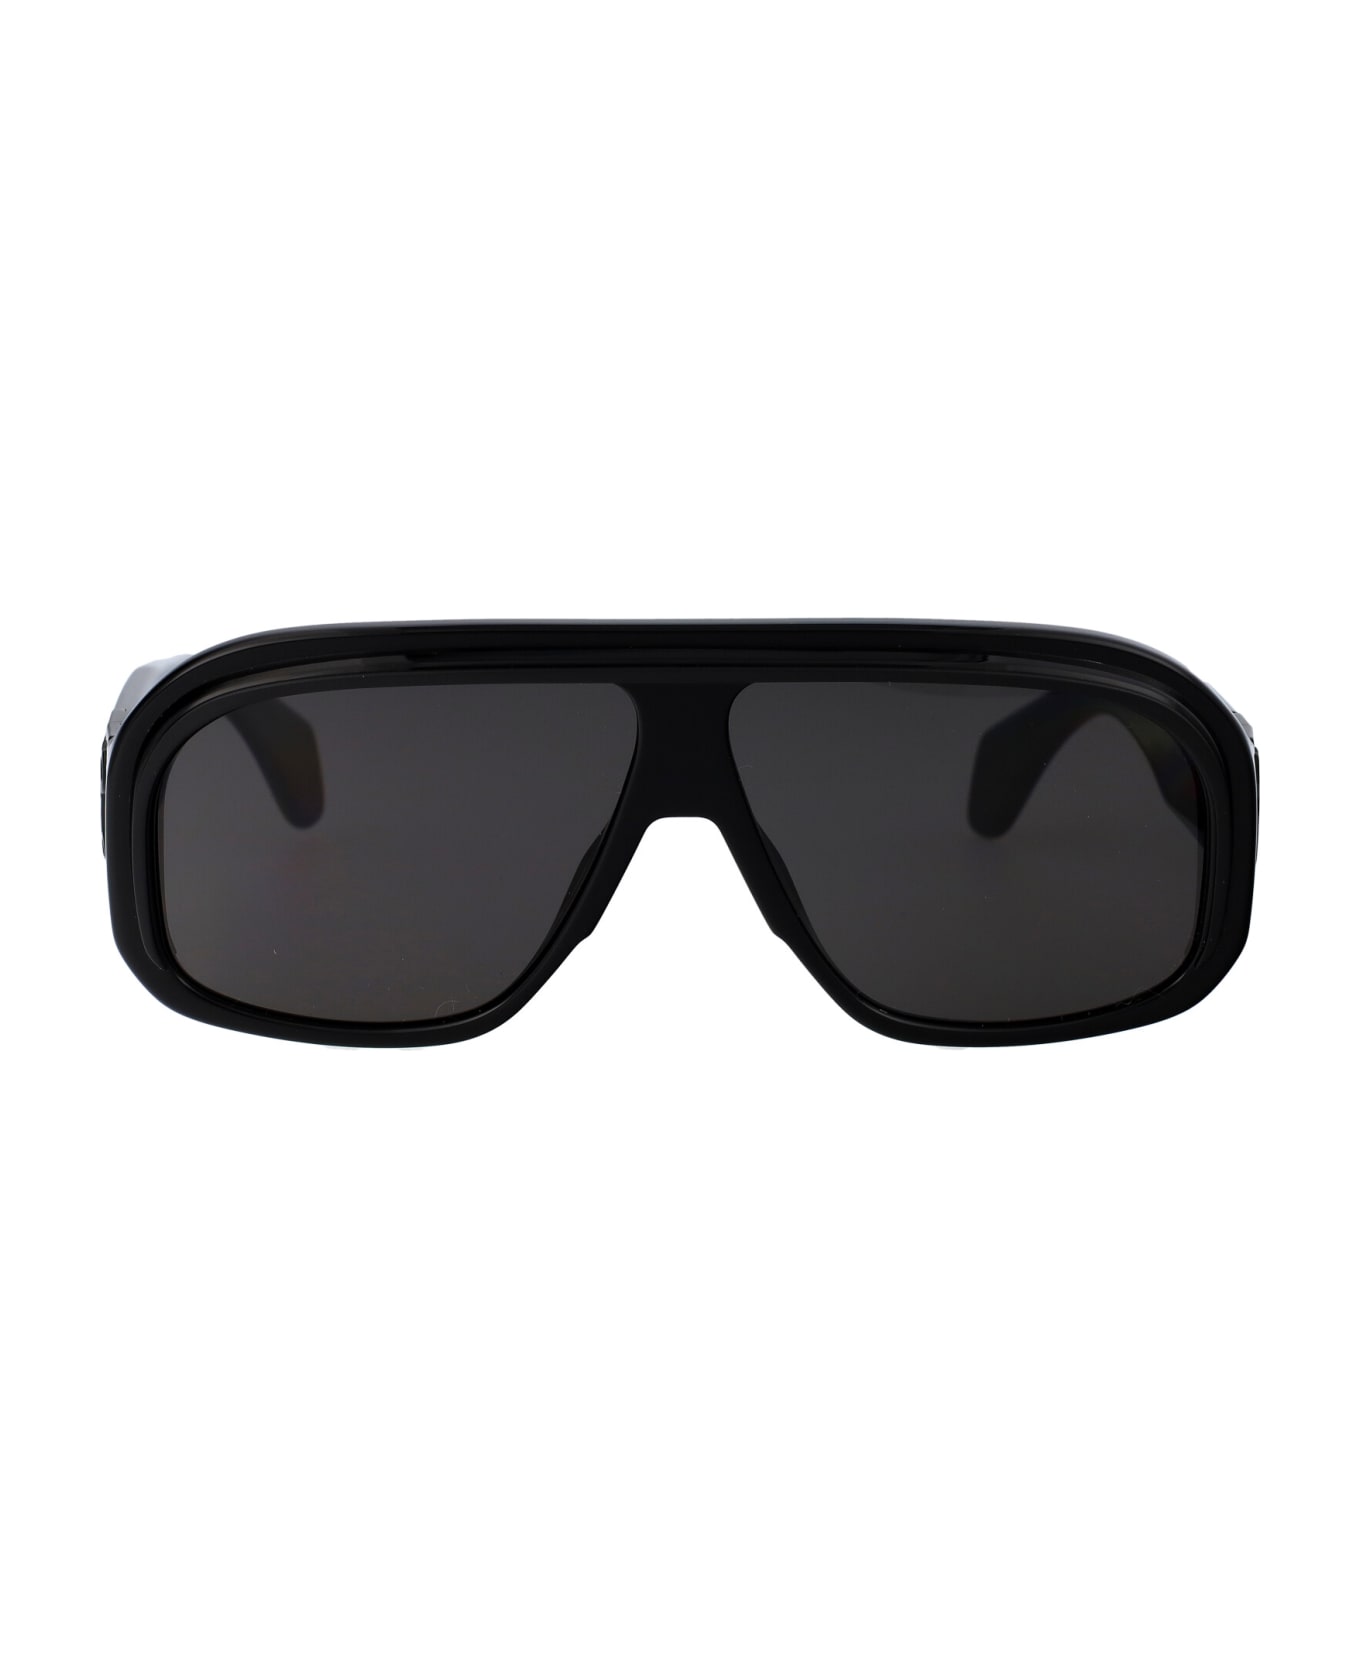 Palm Angels Reedley Sunglasses - 1207 BLACK B  